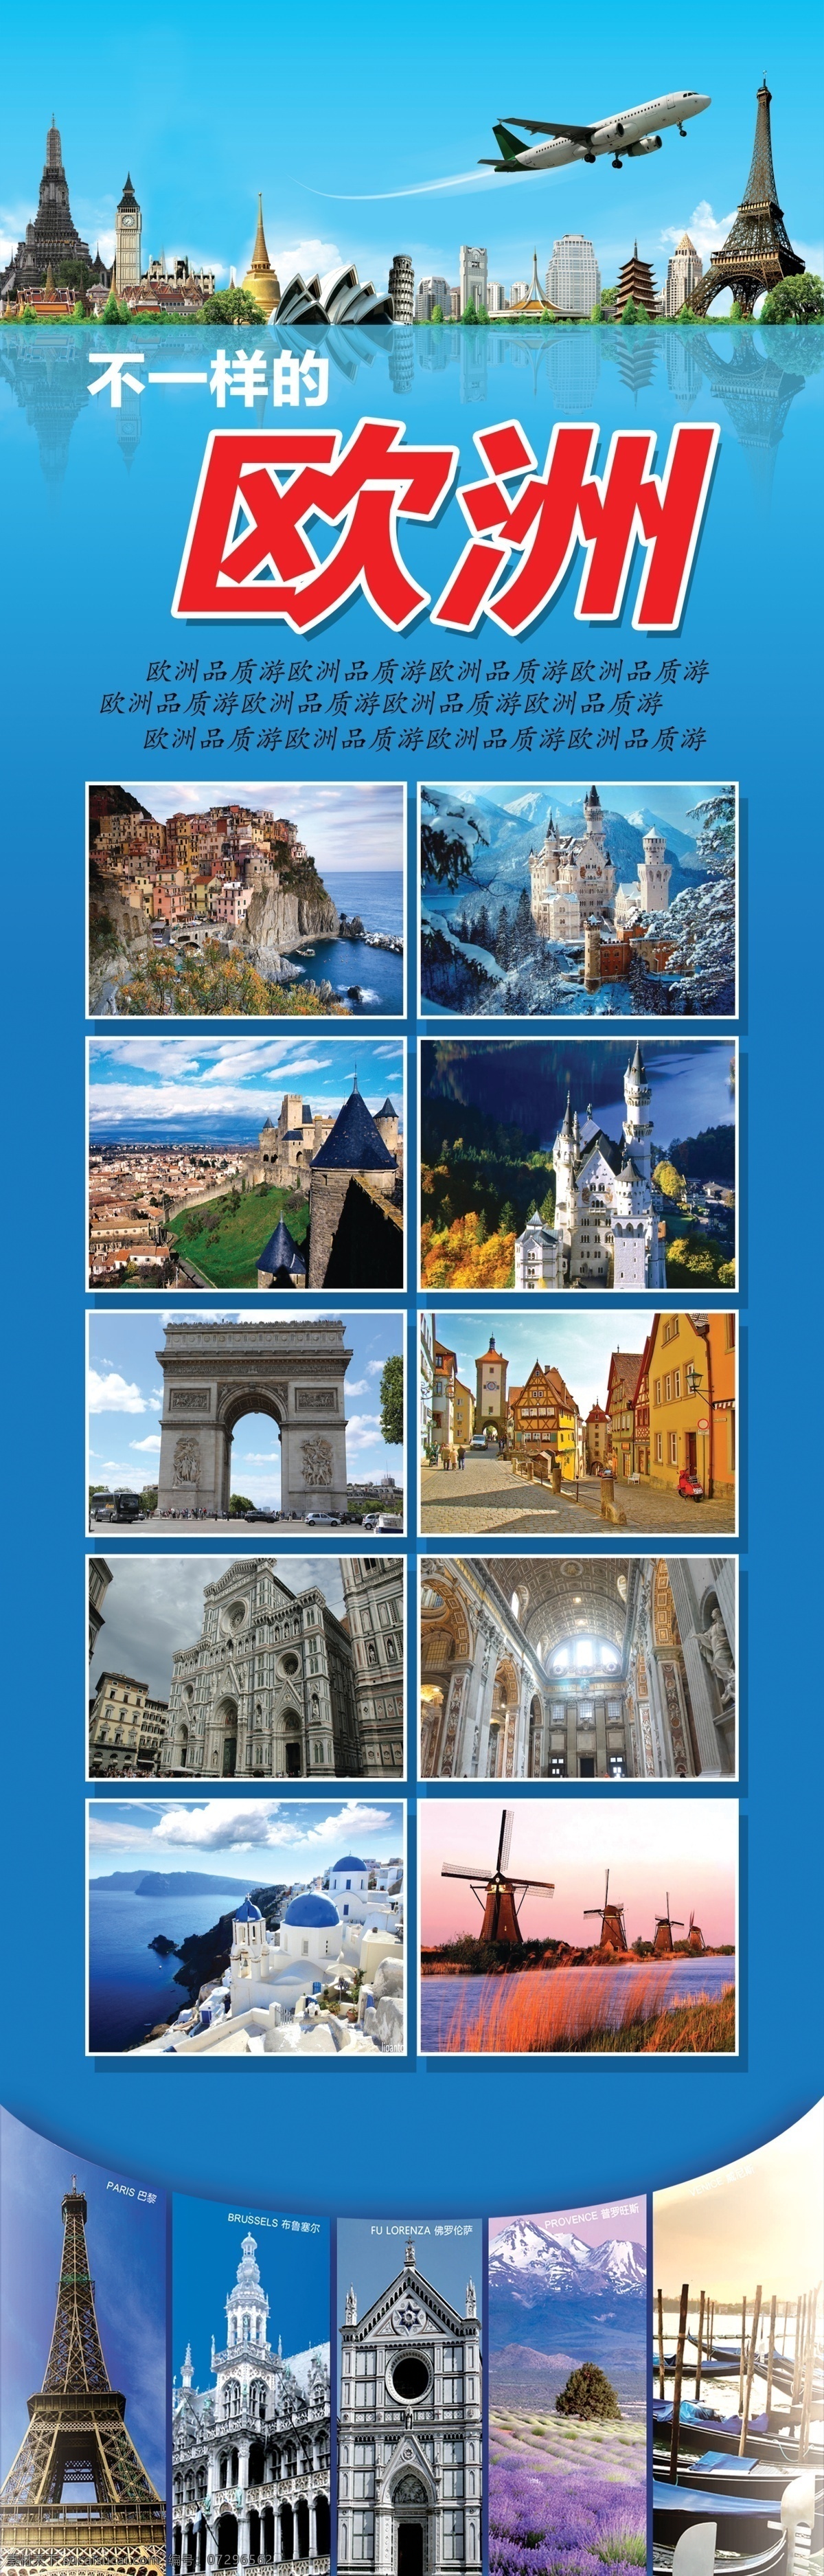 欧洲旅游 欧洲 旅游 飞机 旅游图片 海报 品牌游